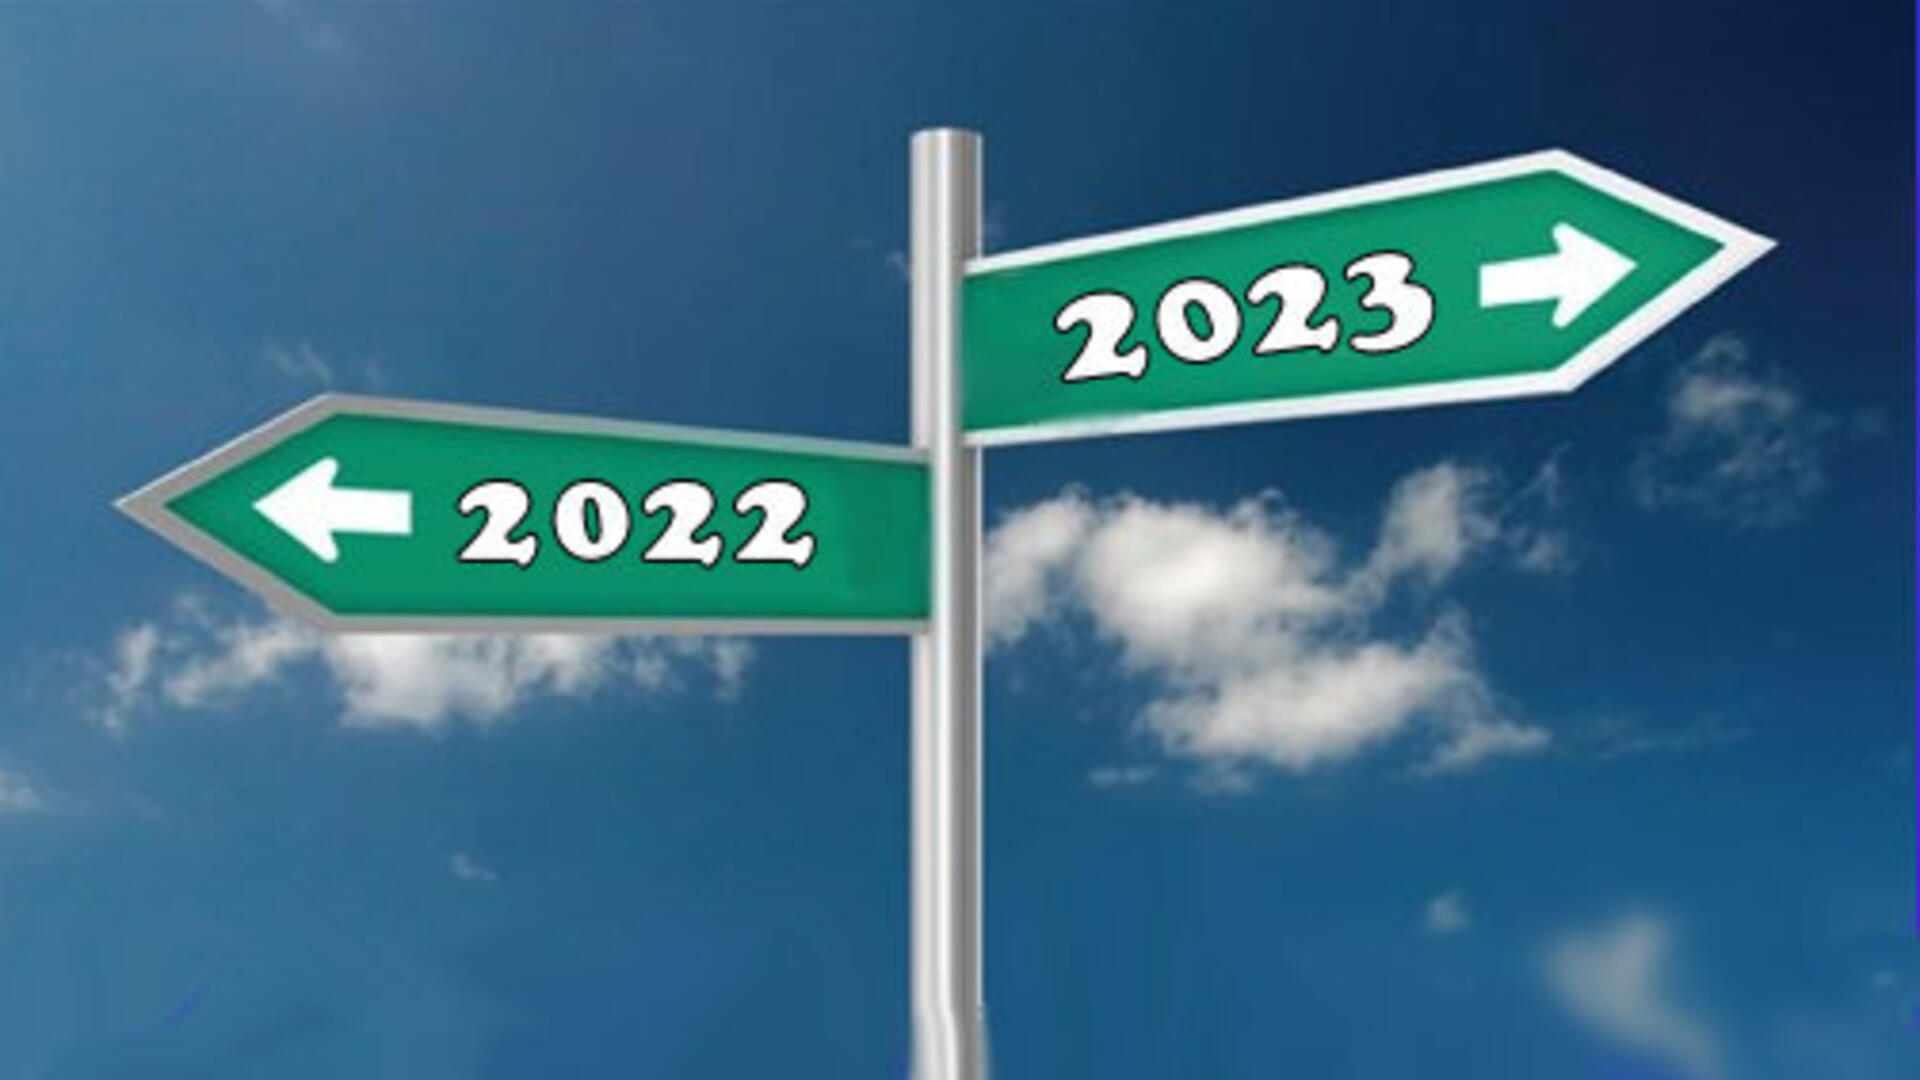 borden, een met een pijl naar 2022 en een met een pijl naar 2023